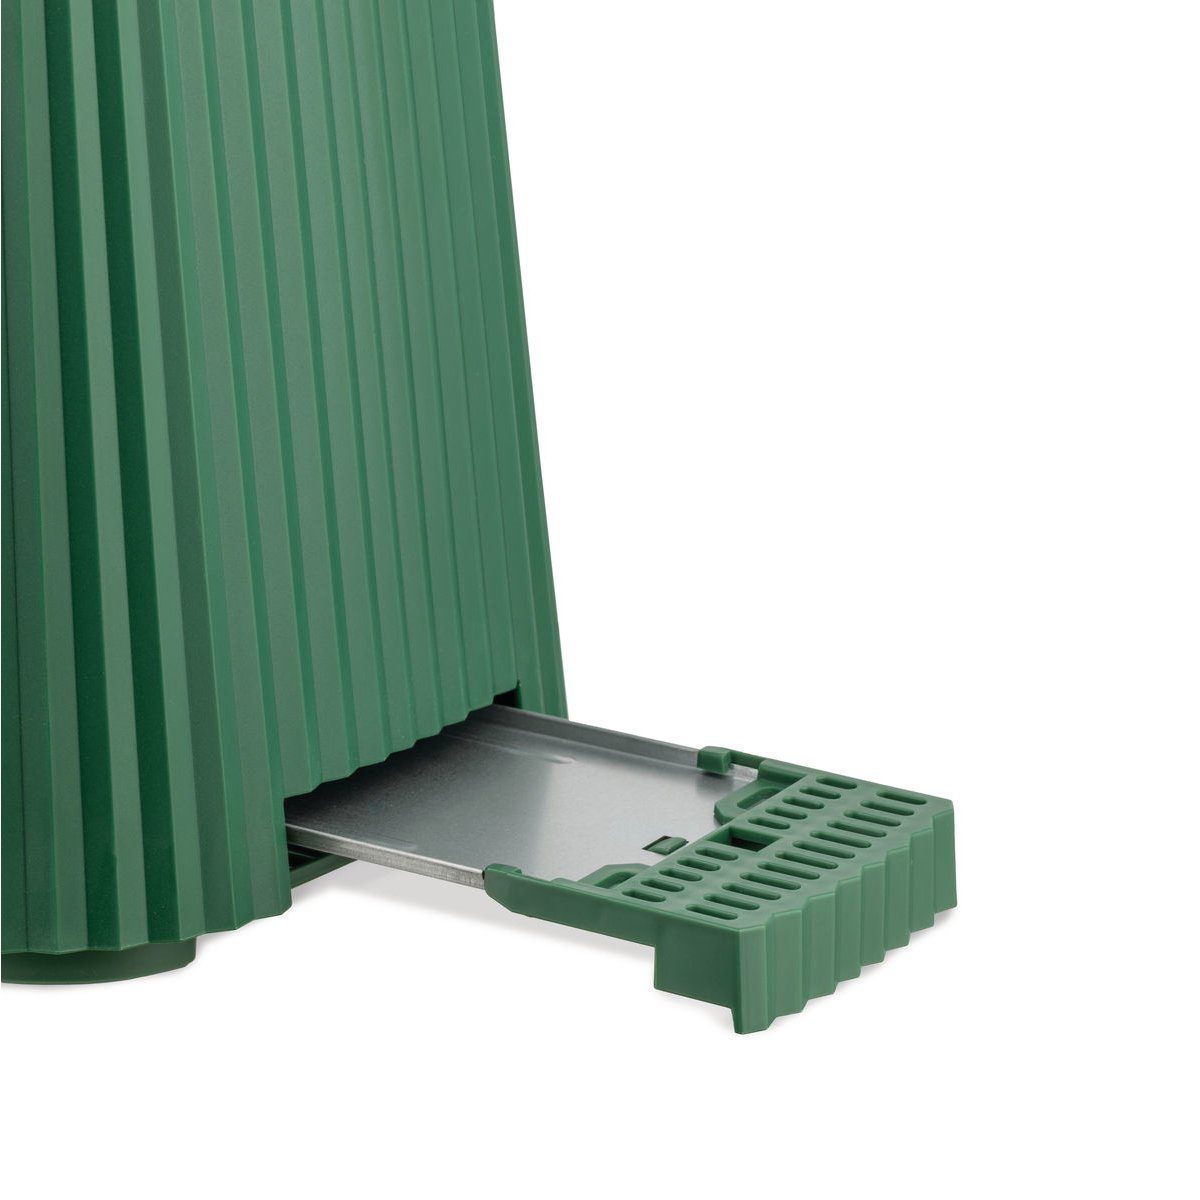 Grün Alessi Wasserkocher Farbwahl Wasserkocher Plissé + - Toaster Set